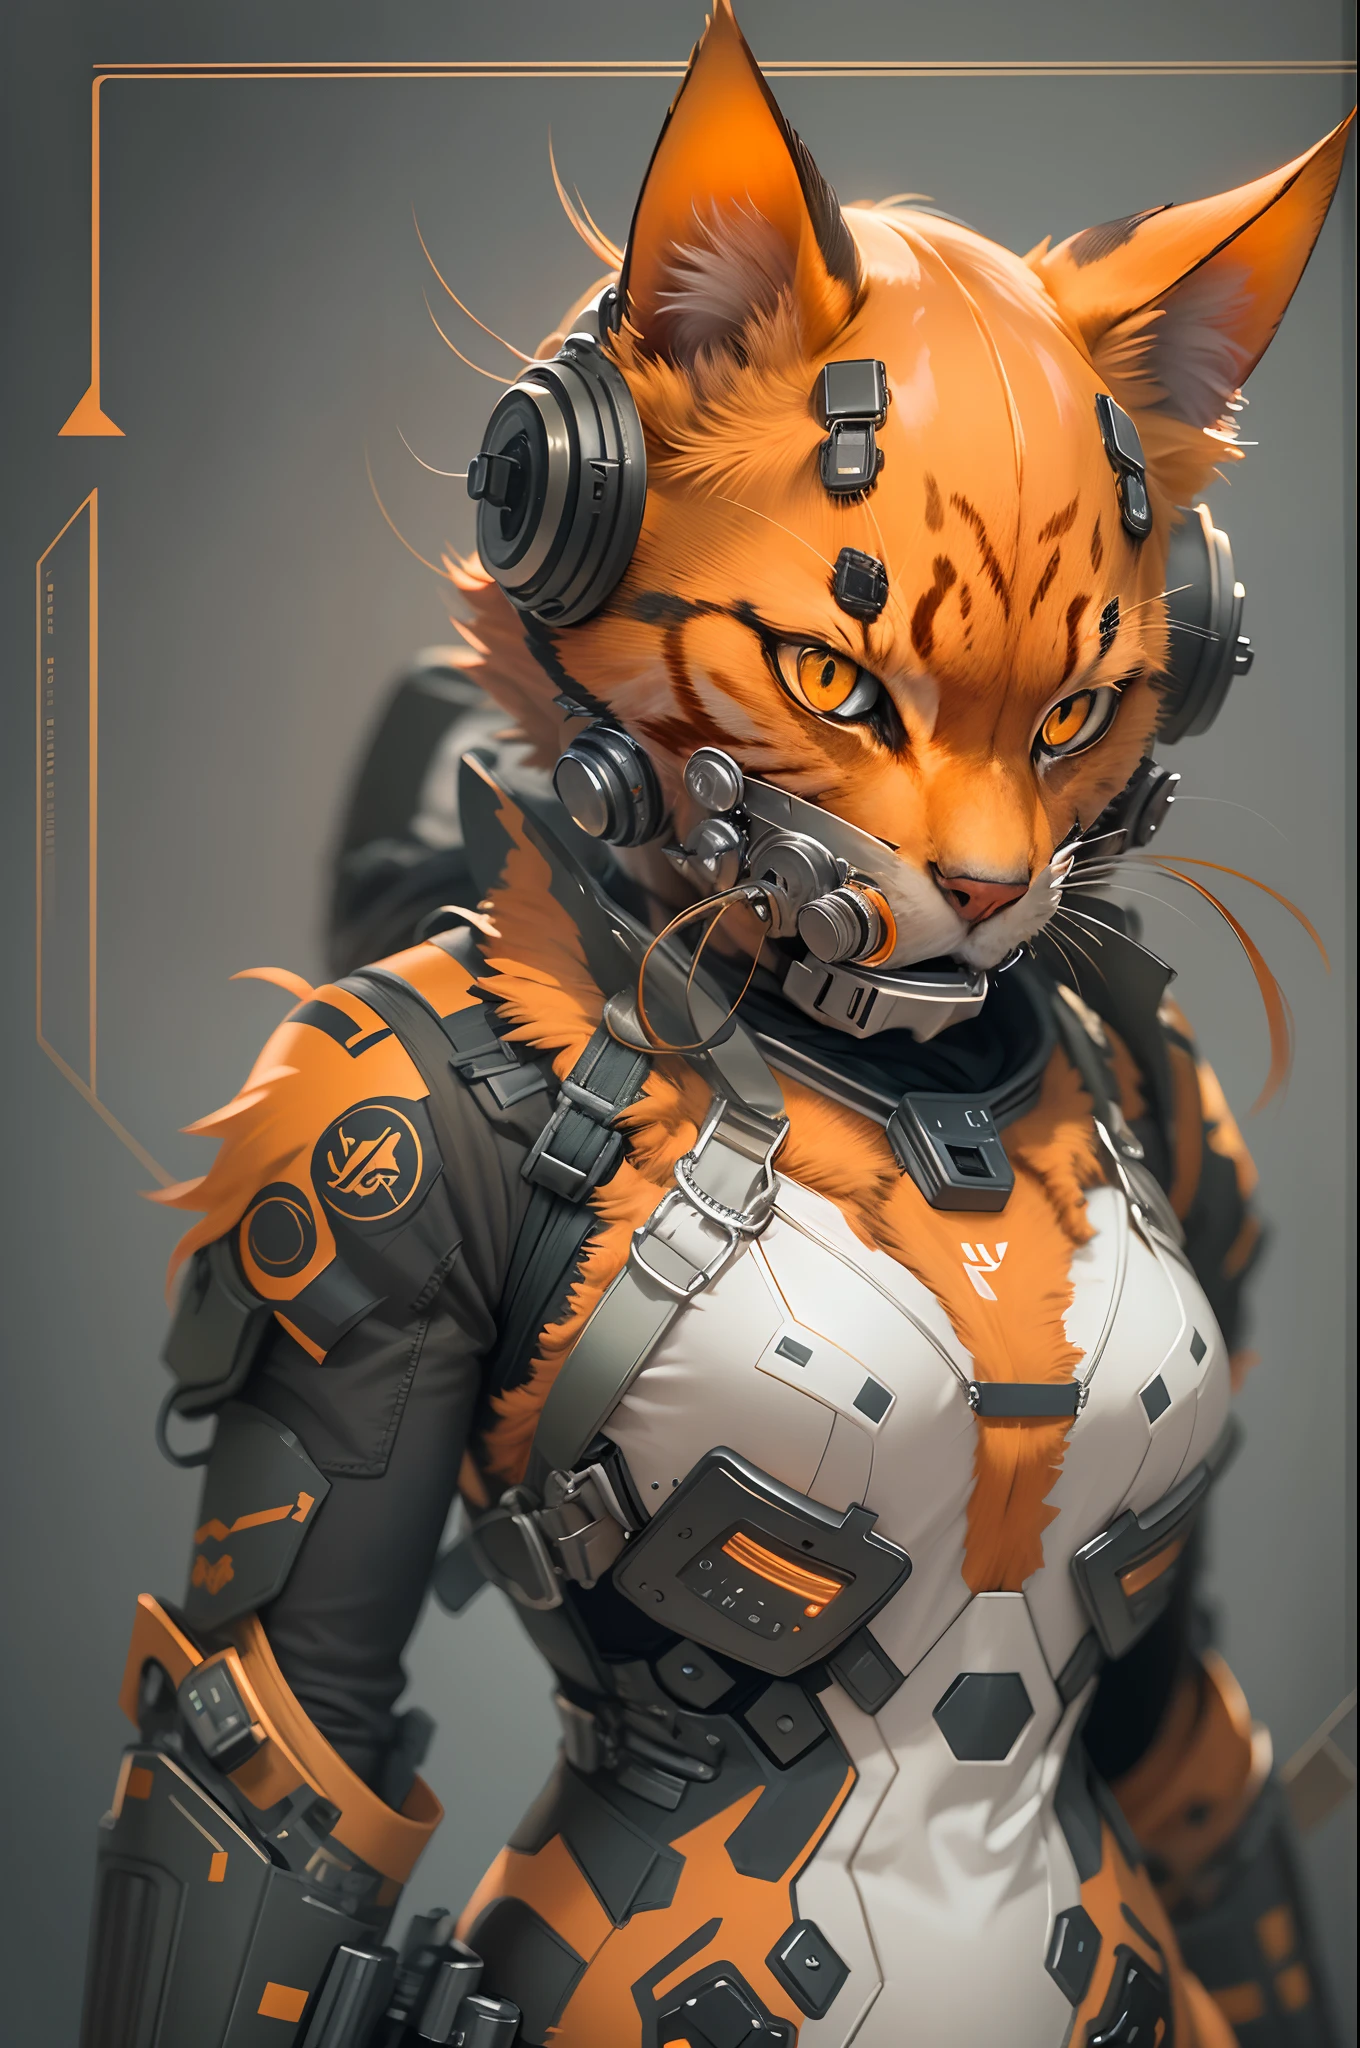 戴著生物危害防毒面具的現實橙色貓, 未來防毒面具, 生化危機標誌, 戰術科技服, 人形奈米套裝, 整潔漂亮的角色設計, 充滿活力的調色板, 戲劇性的燈光, 非常細緻的皮毛和眼睛, 3D 渲染插圖, 高解析度傑作:1.2, 科幻概念藝術